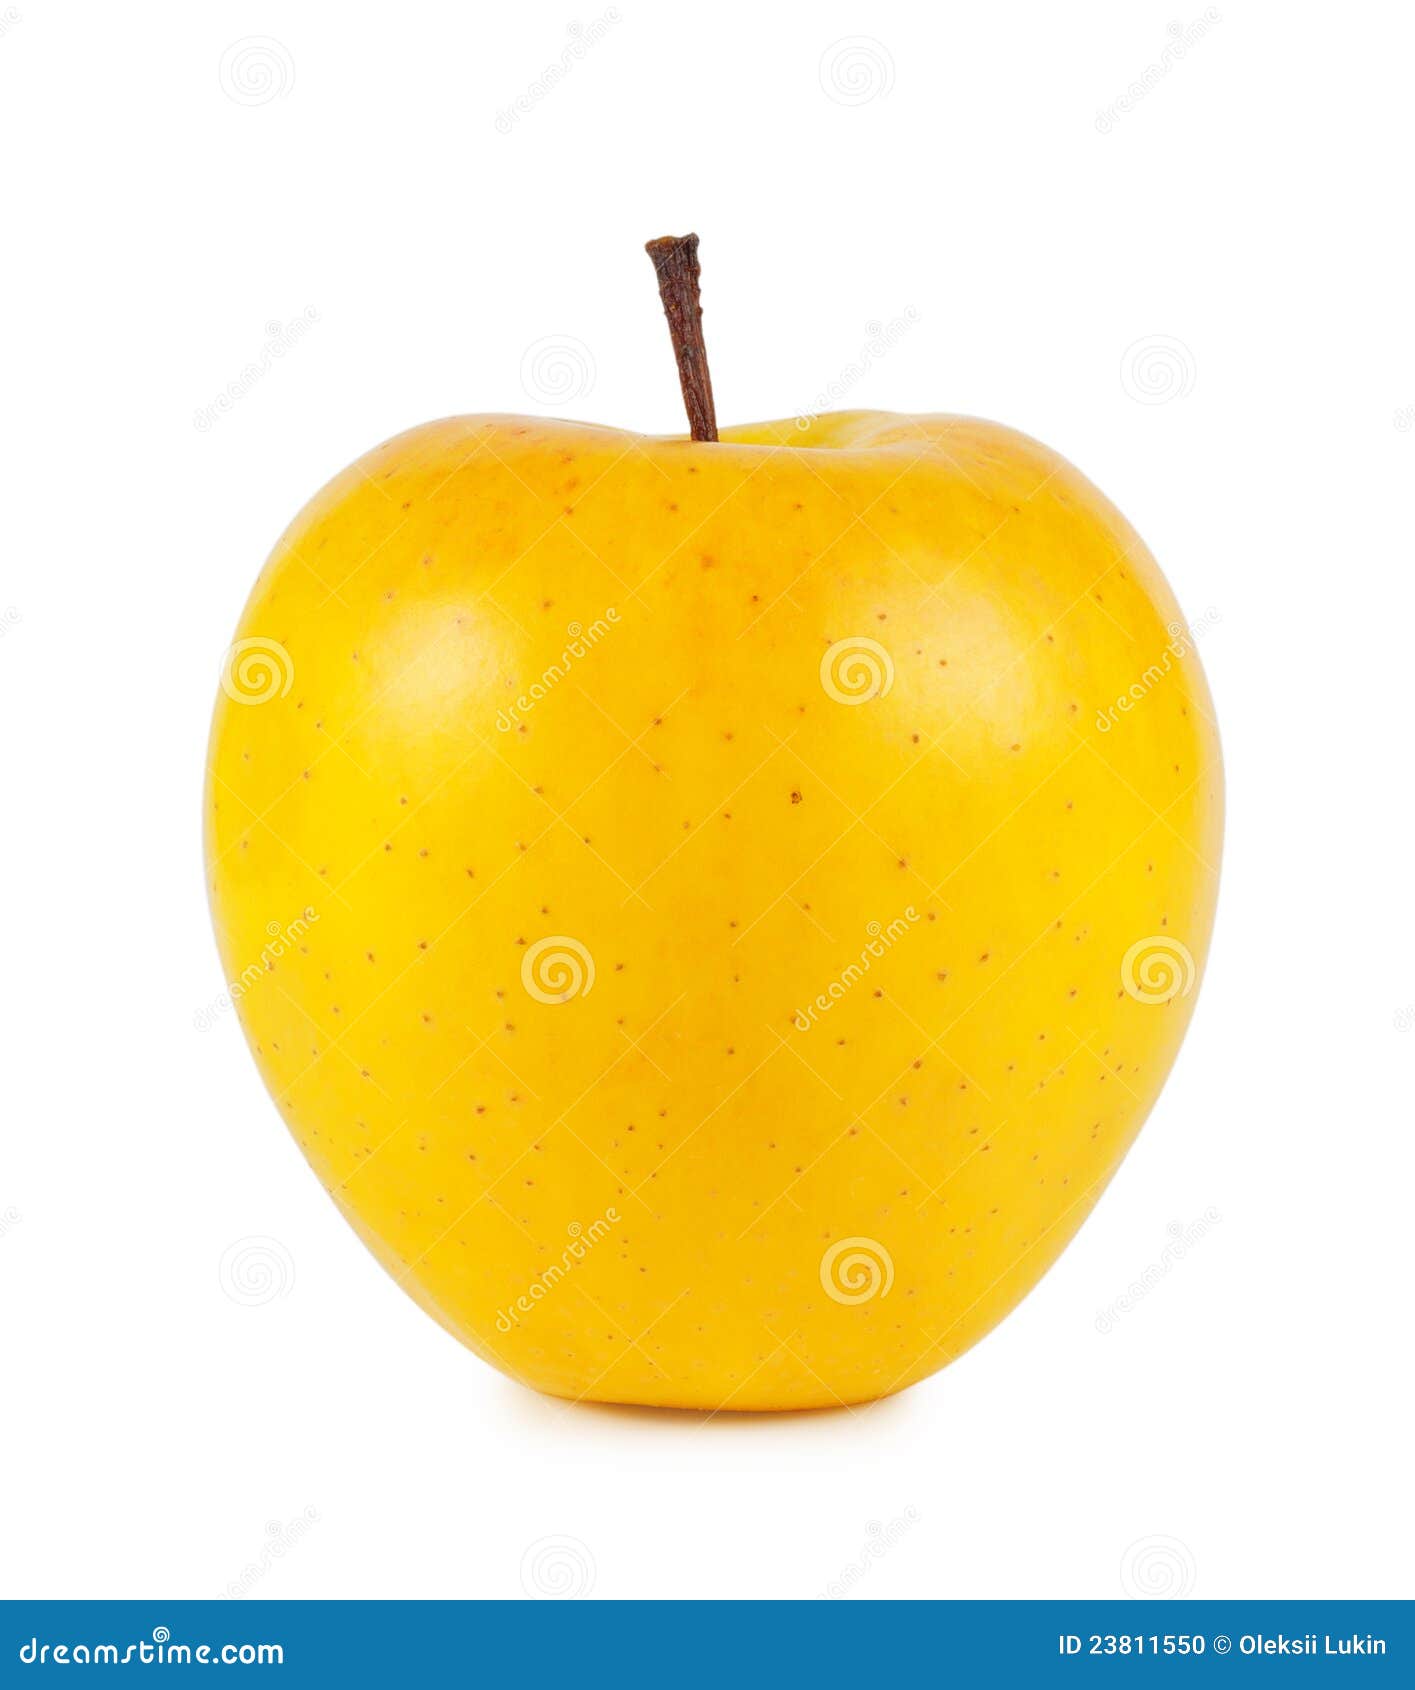 Почему яблоко желтое. Яблоки желтые. Спелое яблоко желтое. На белом фоне жёлтого цвета яблоко. Яблоки желтого цвета для детей на белом фоне.